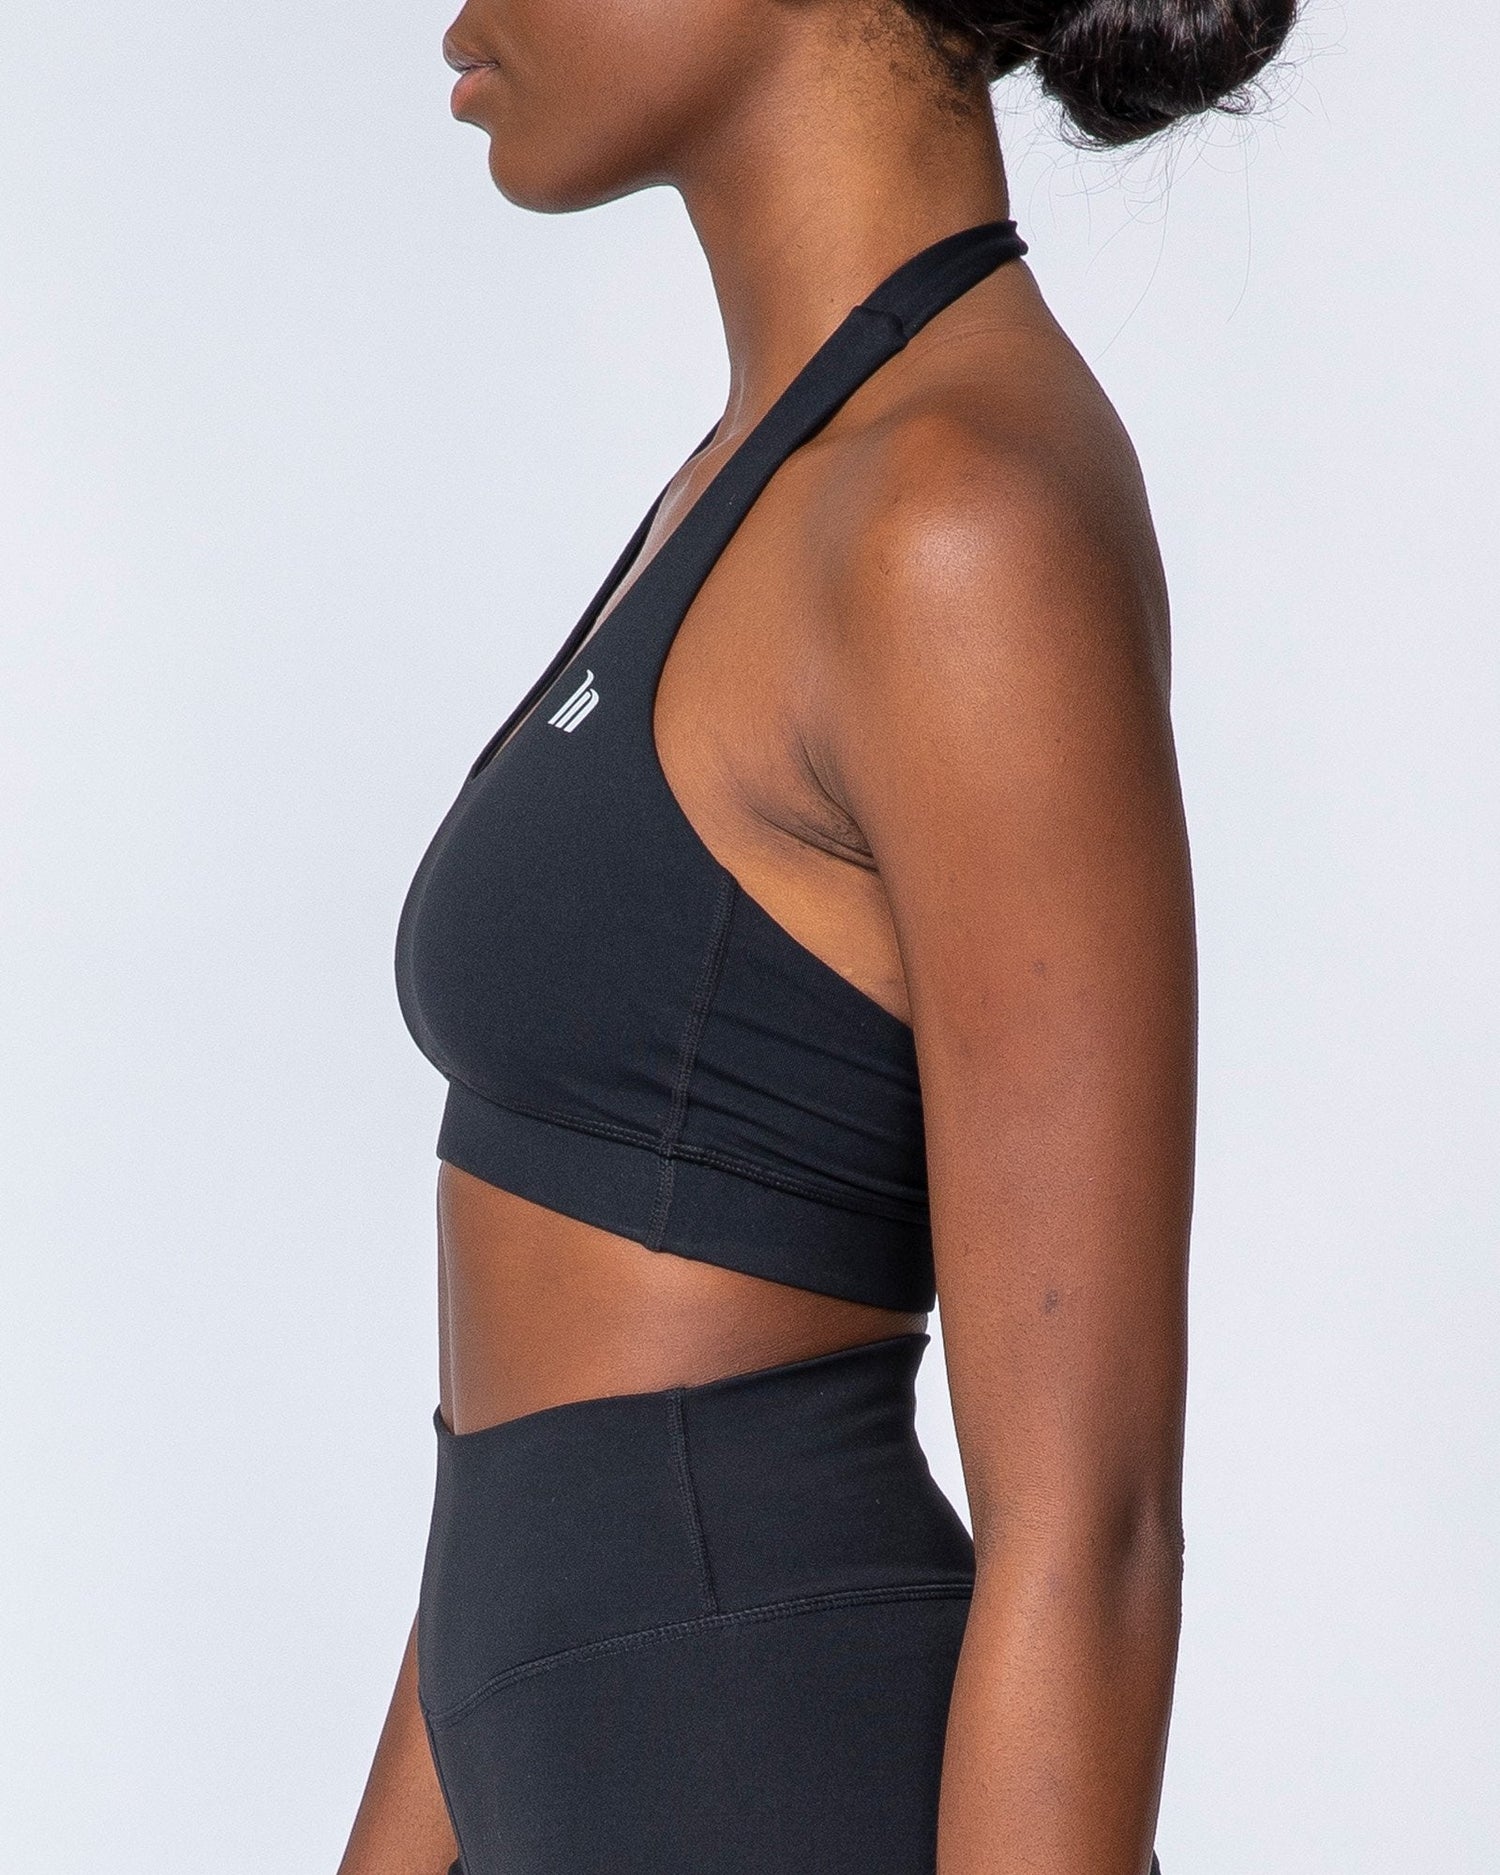 Black halter plunge neck supportive sports bra